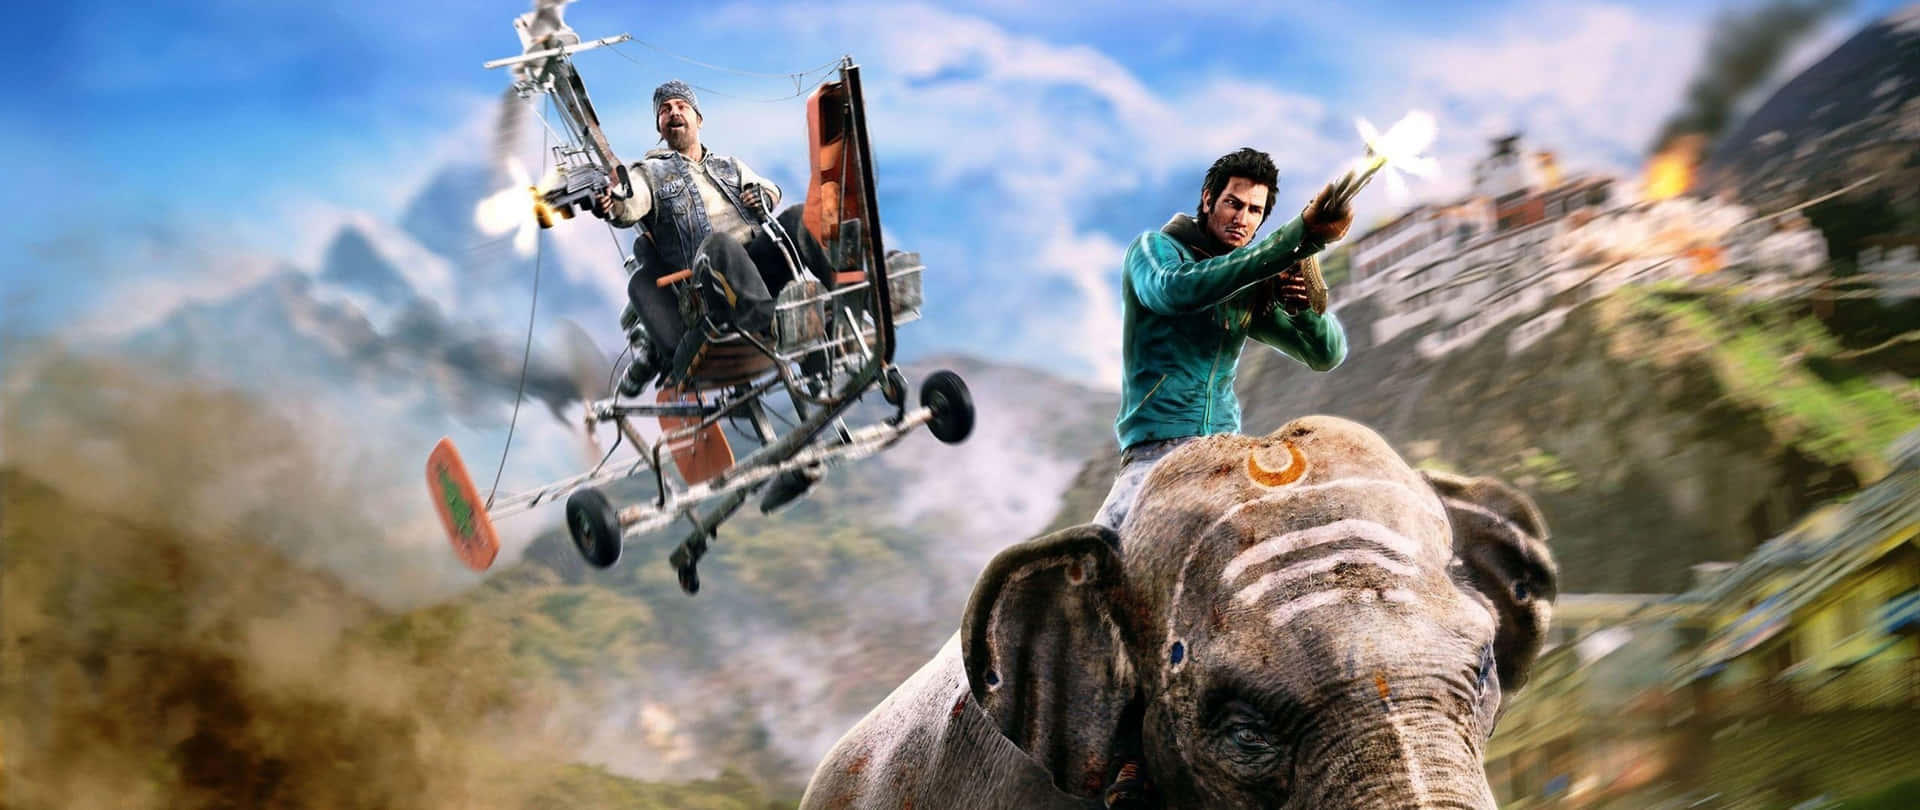 En mand rider en elefant med et fly i himlen. Wallpaper